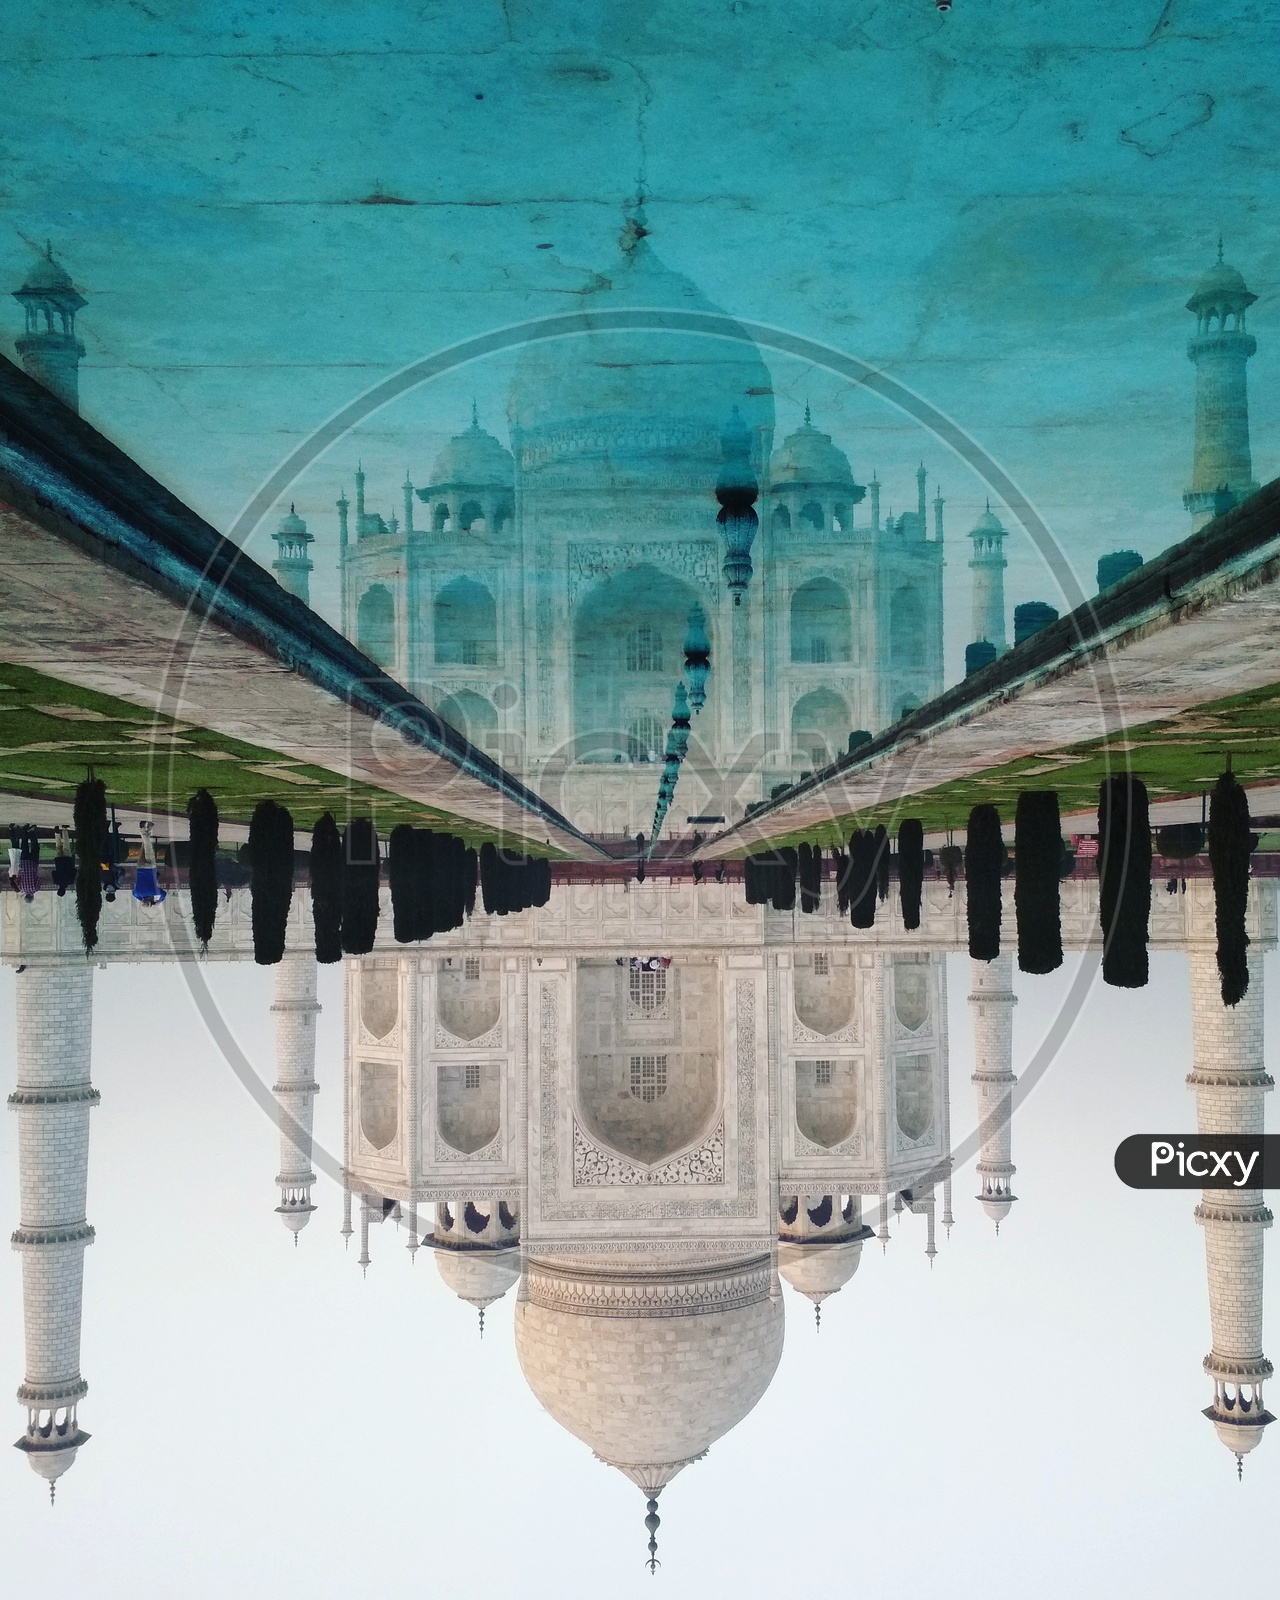 Beauty - Taj Mahal/7 Wonders